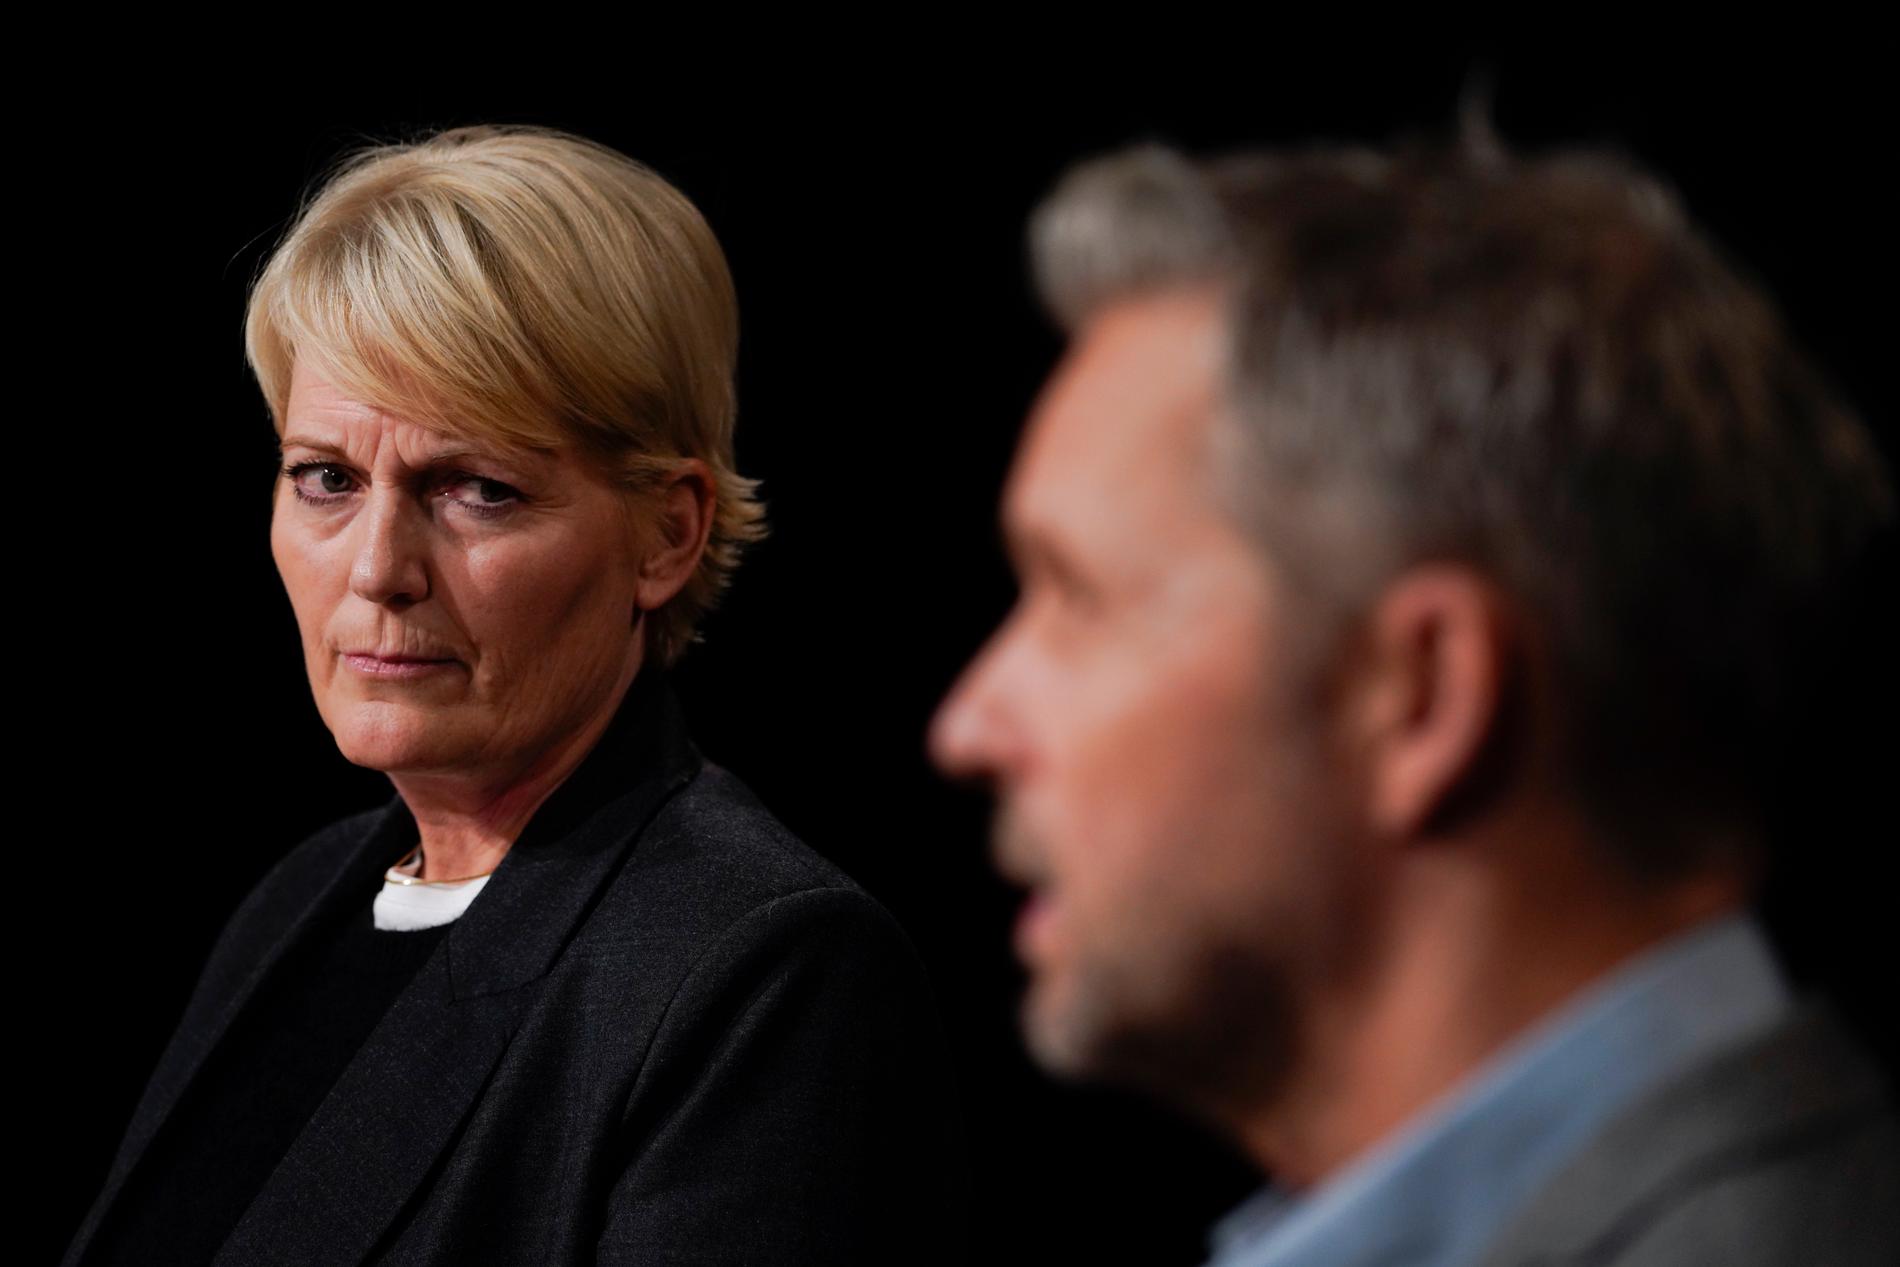 En pressträff hölls om skandalserien. Vibeke Fürst Haugen, chef på NRK uttalade sig.